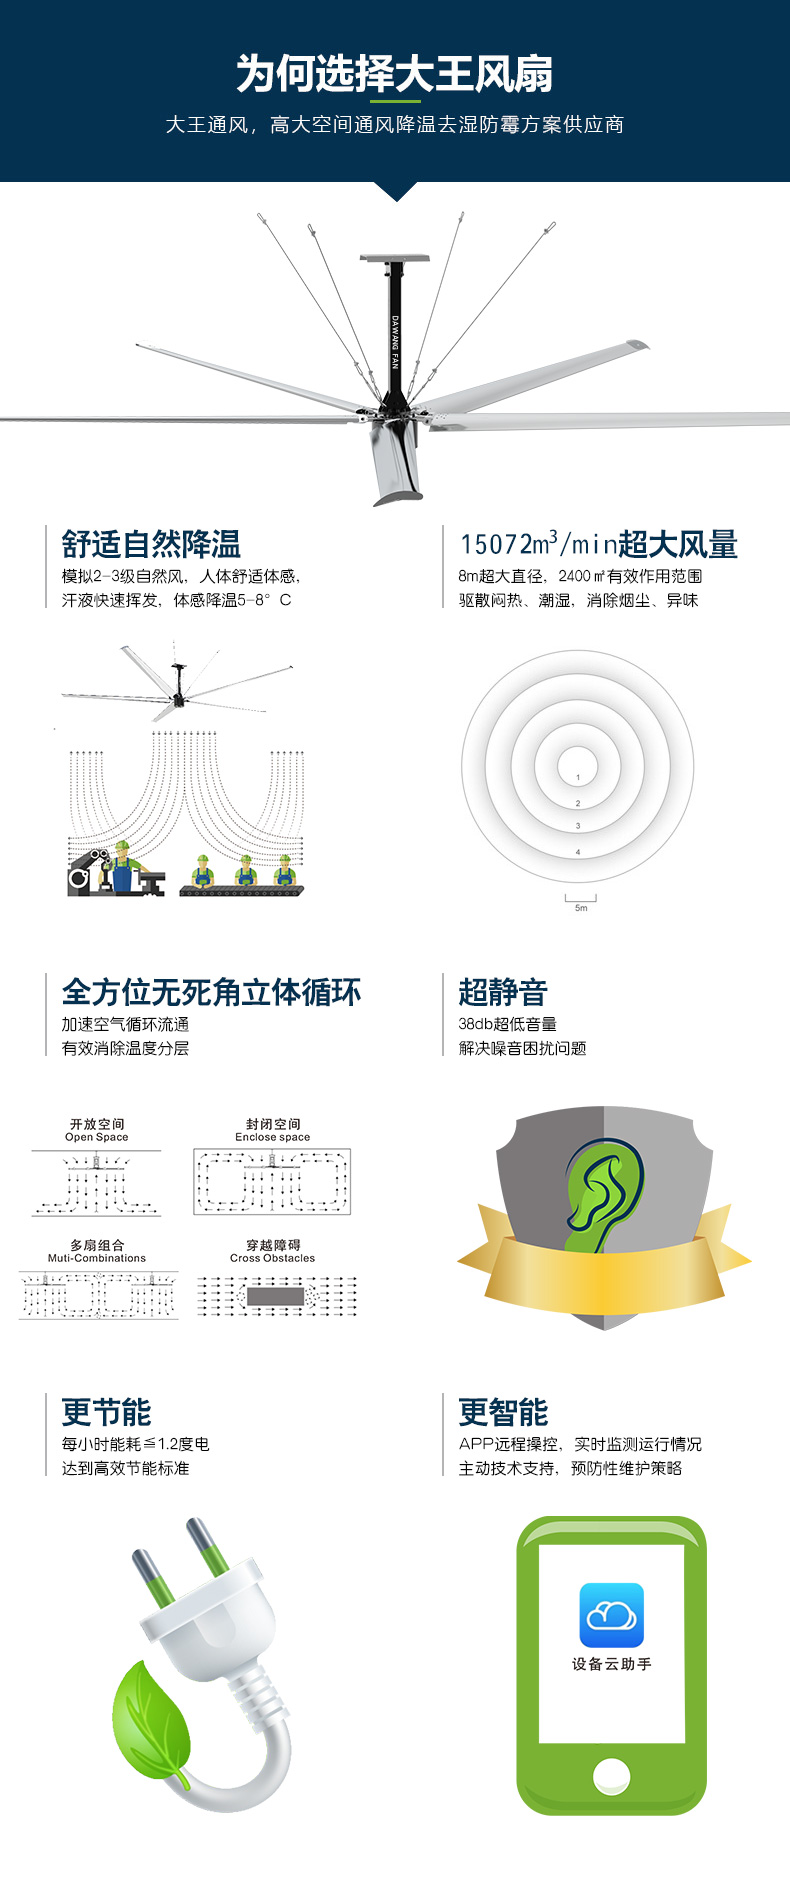 上海生产车间降温方法